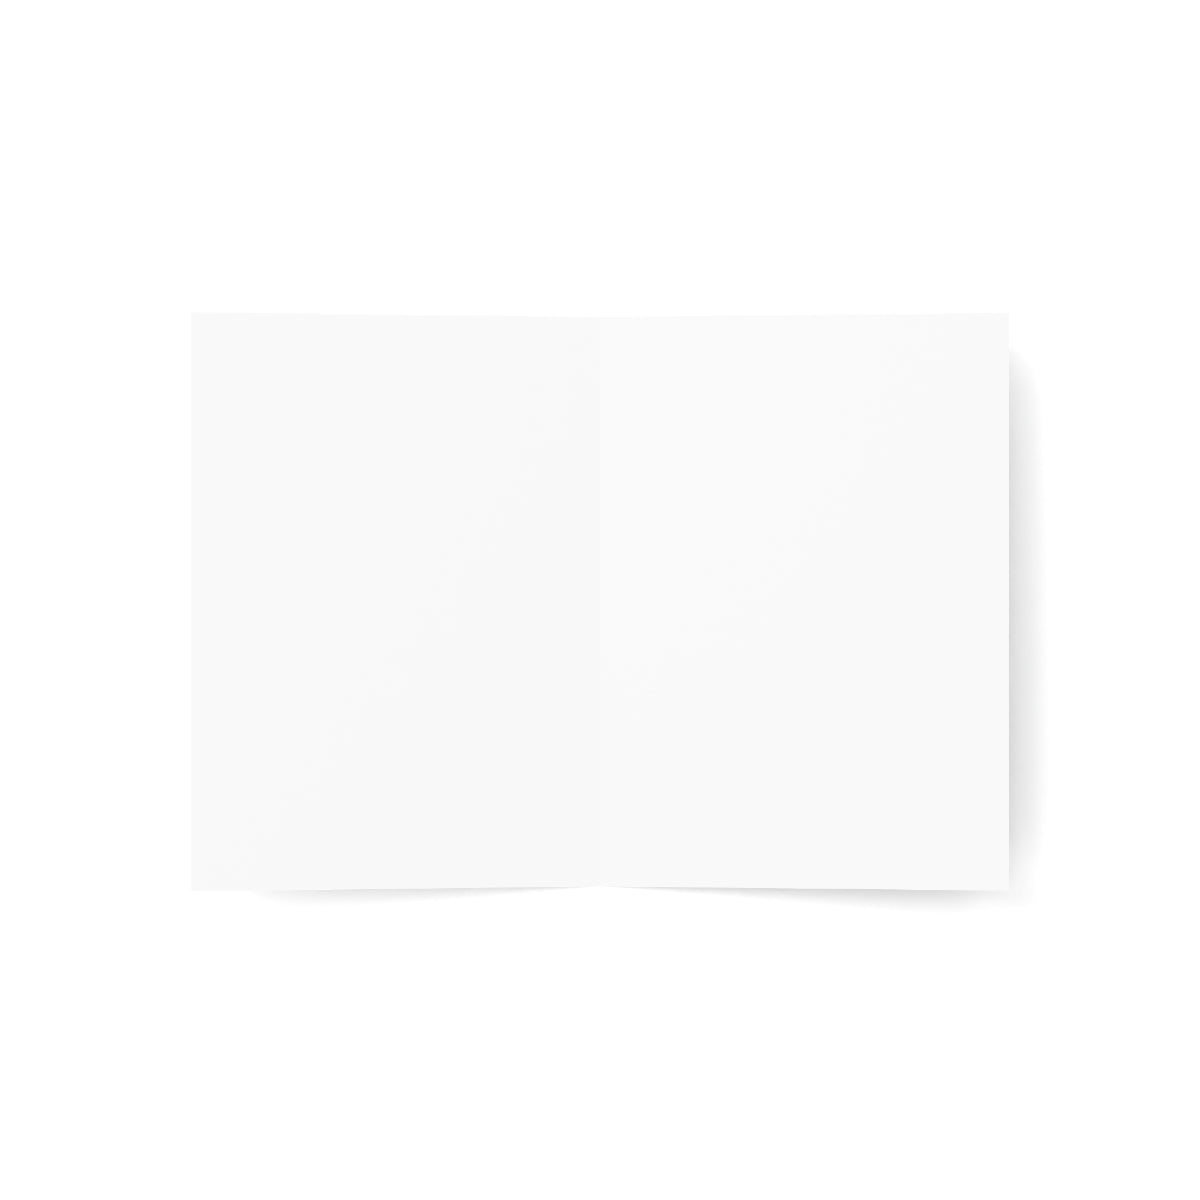 Cape Vincent Folded Matte Notecards + Envelopes (10pcs)